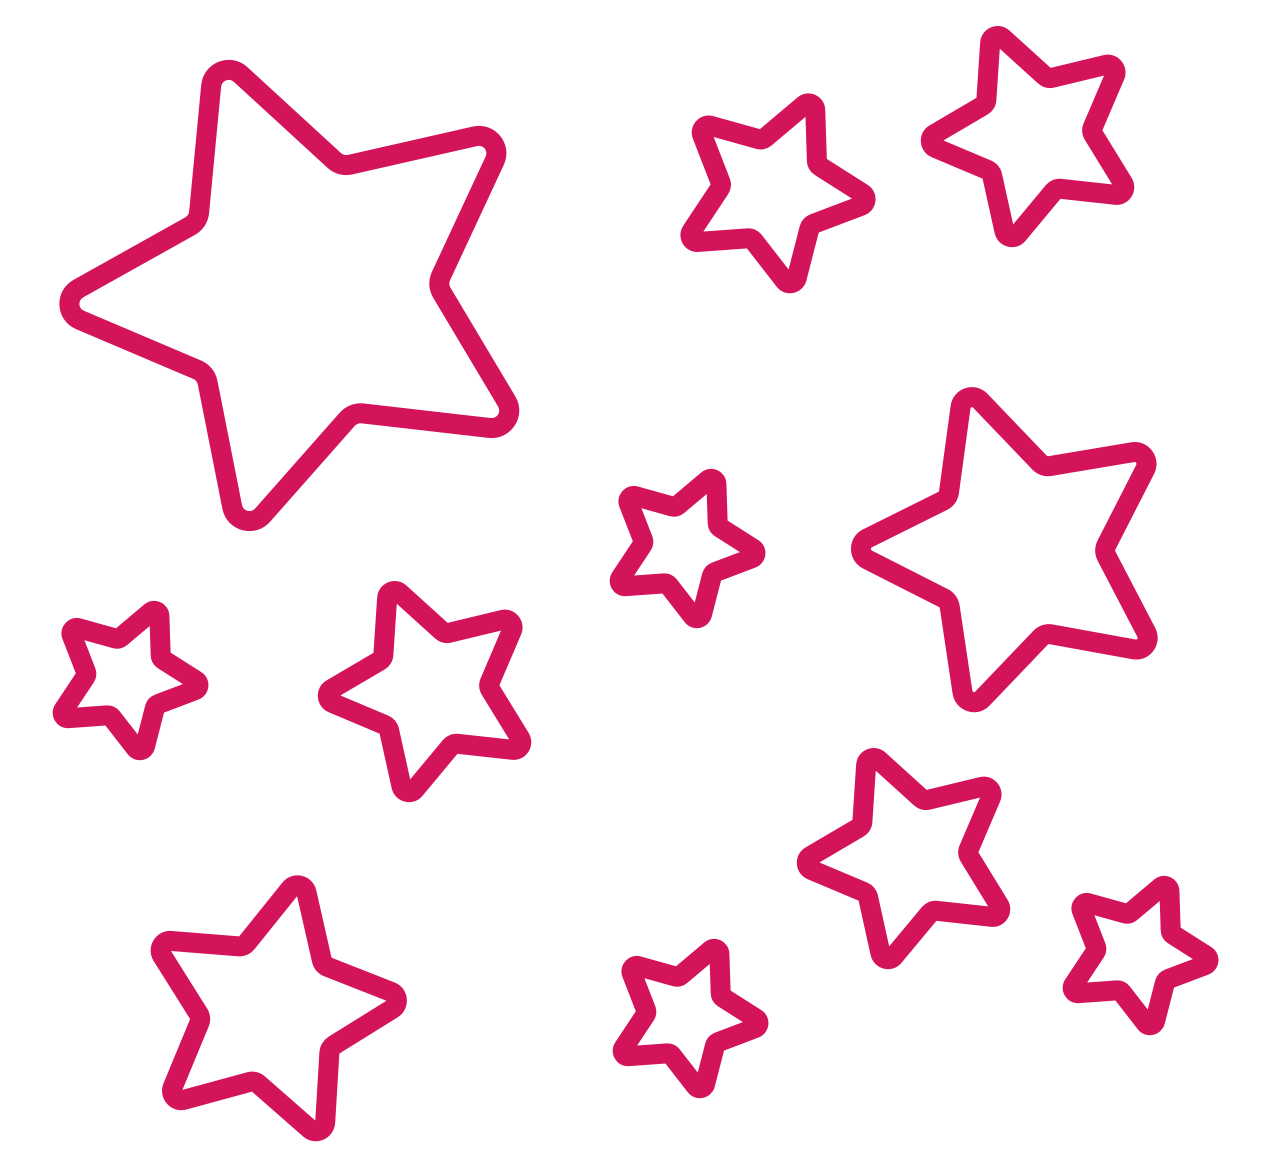 Immagine che raffigura il disegno di alcune stelle